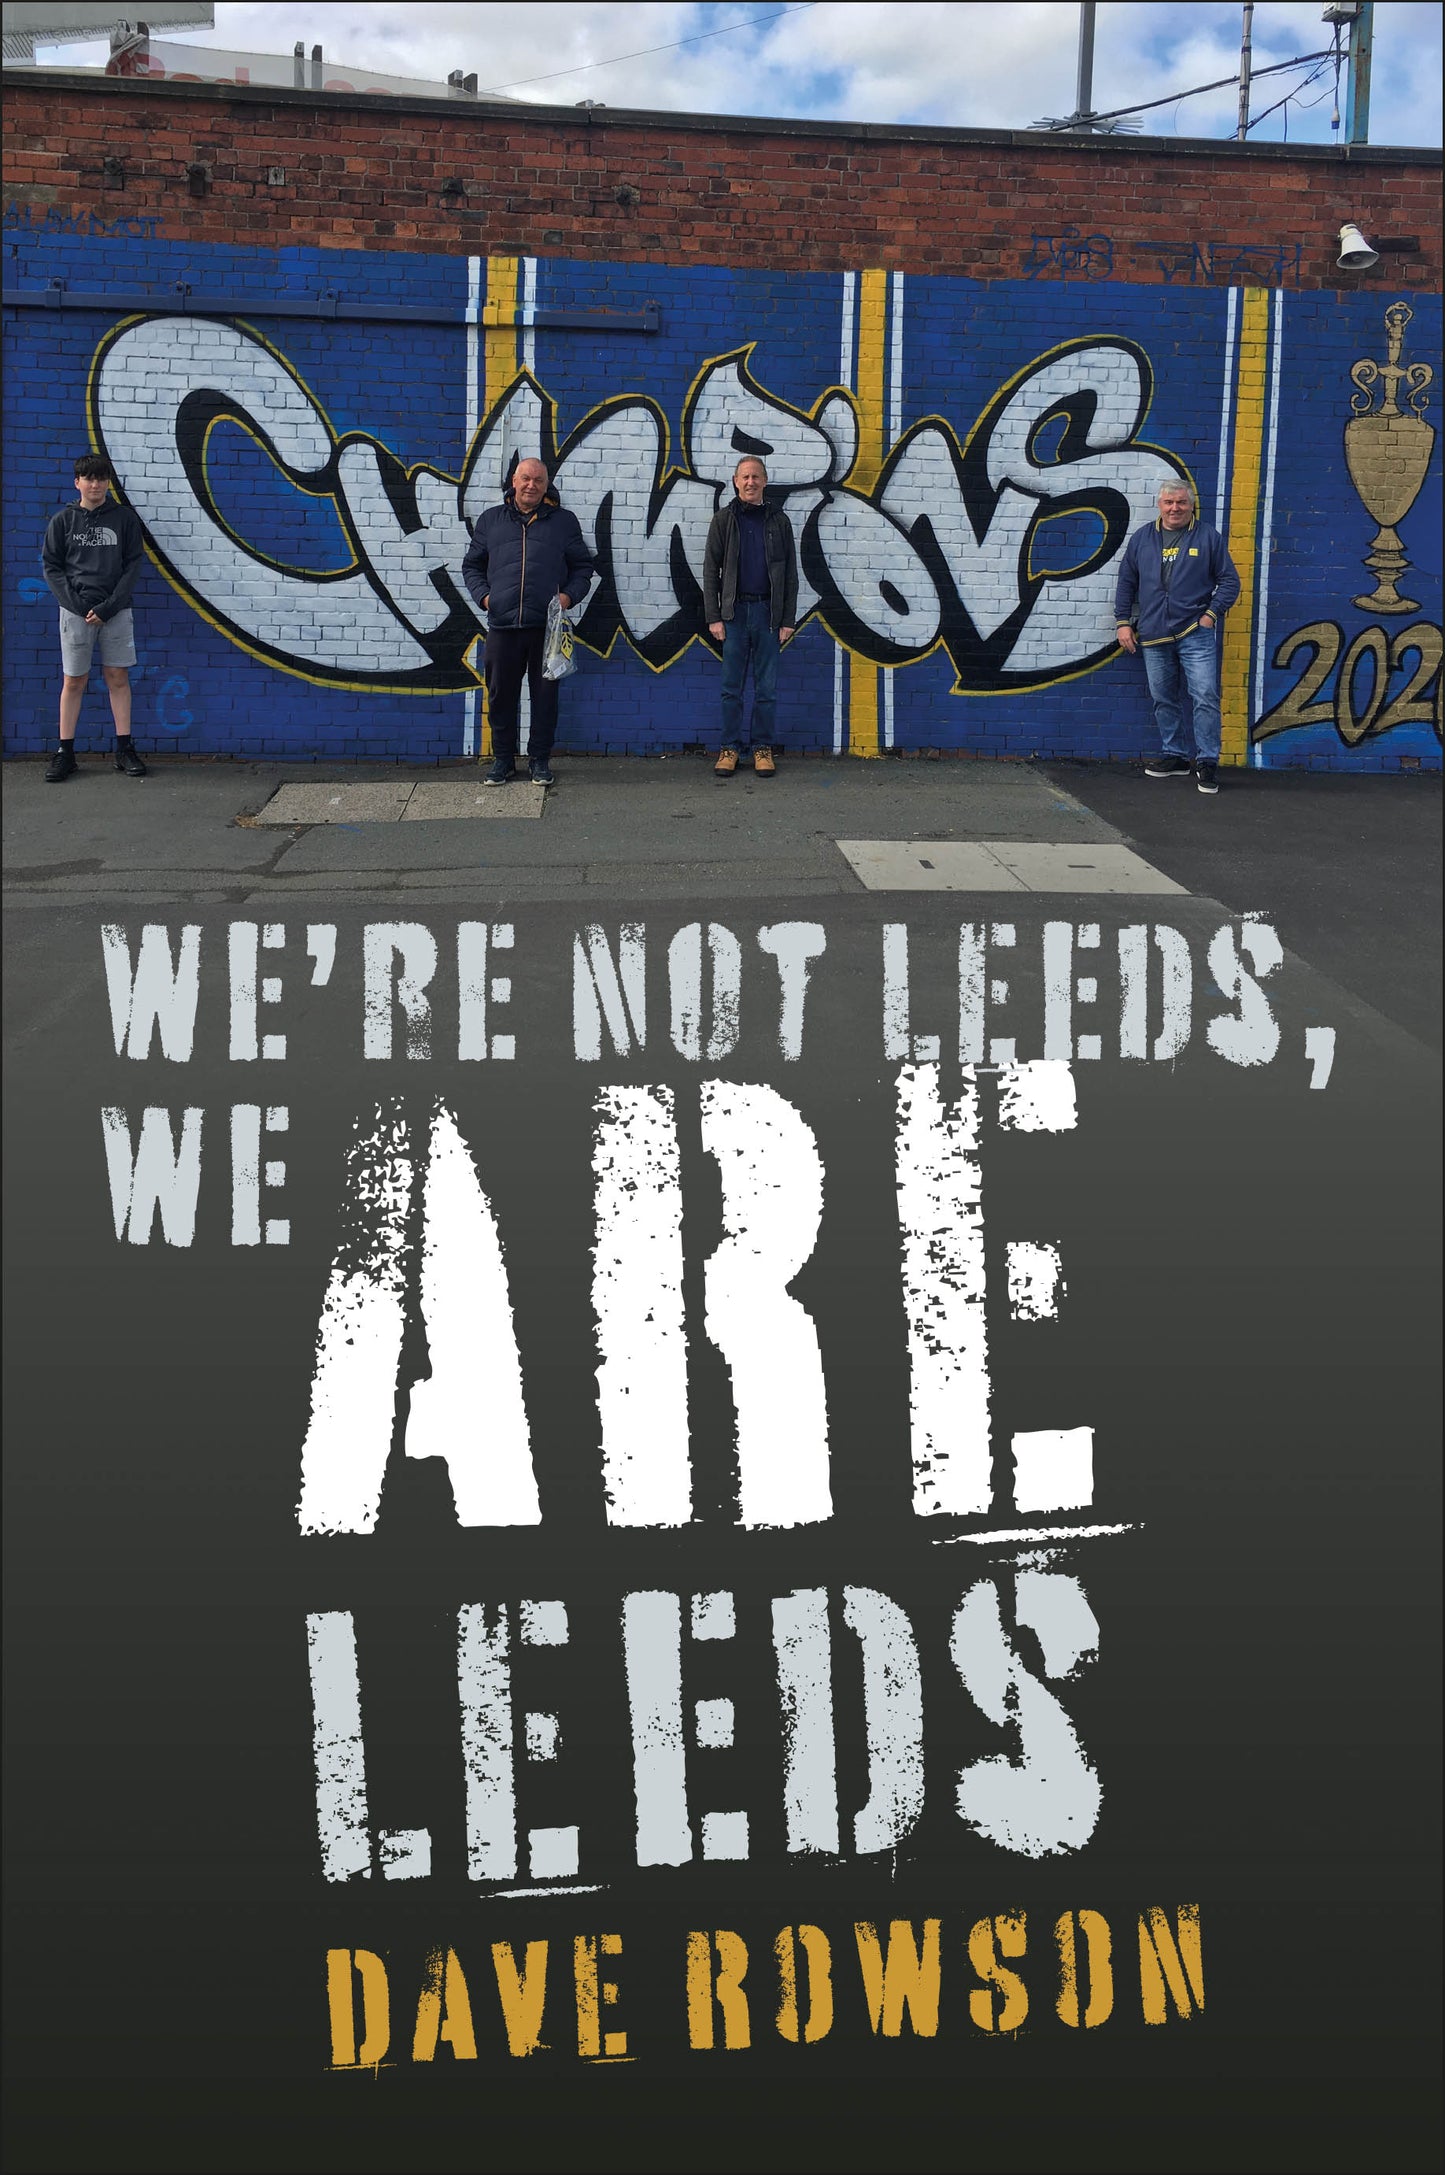 We're not Leeds, We ARE Leeds